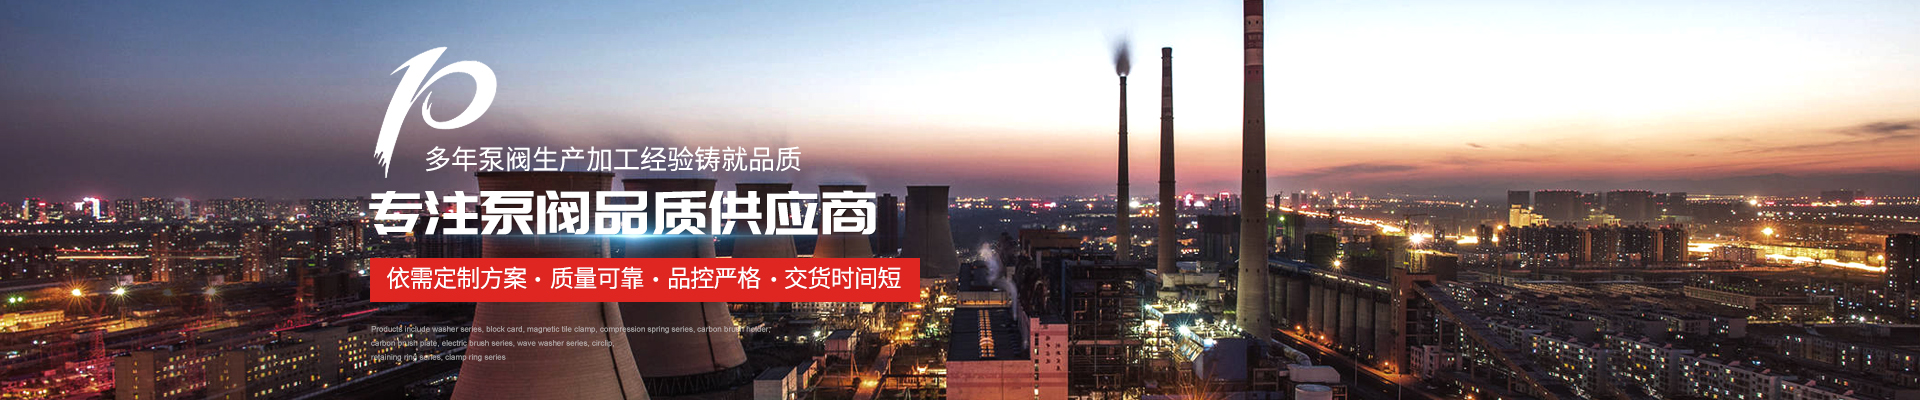 輕型多級泵廠家 - 上海高適泵閥有限公司